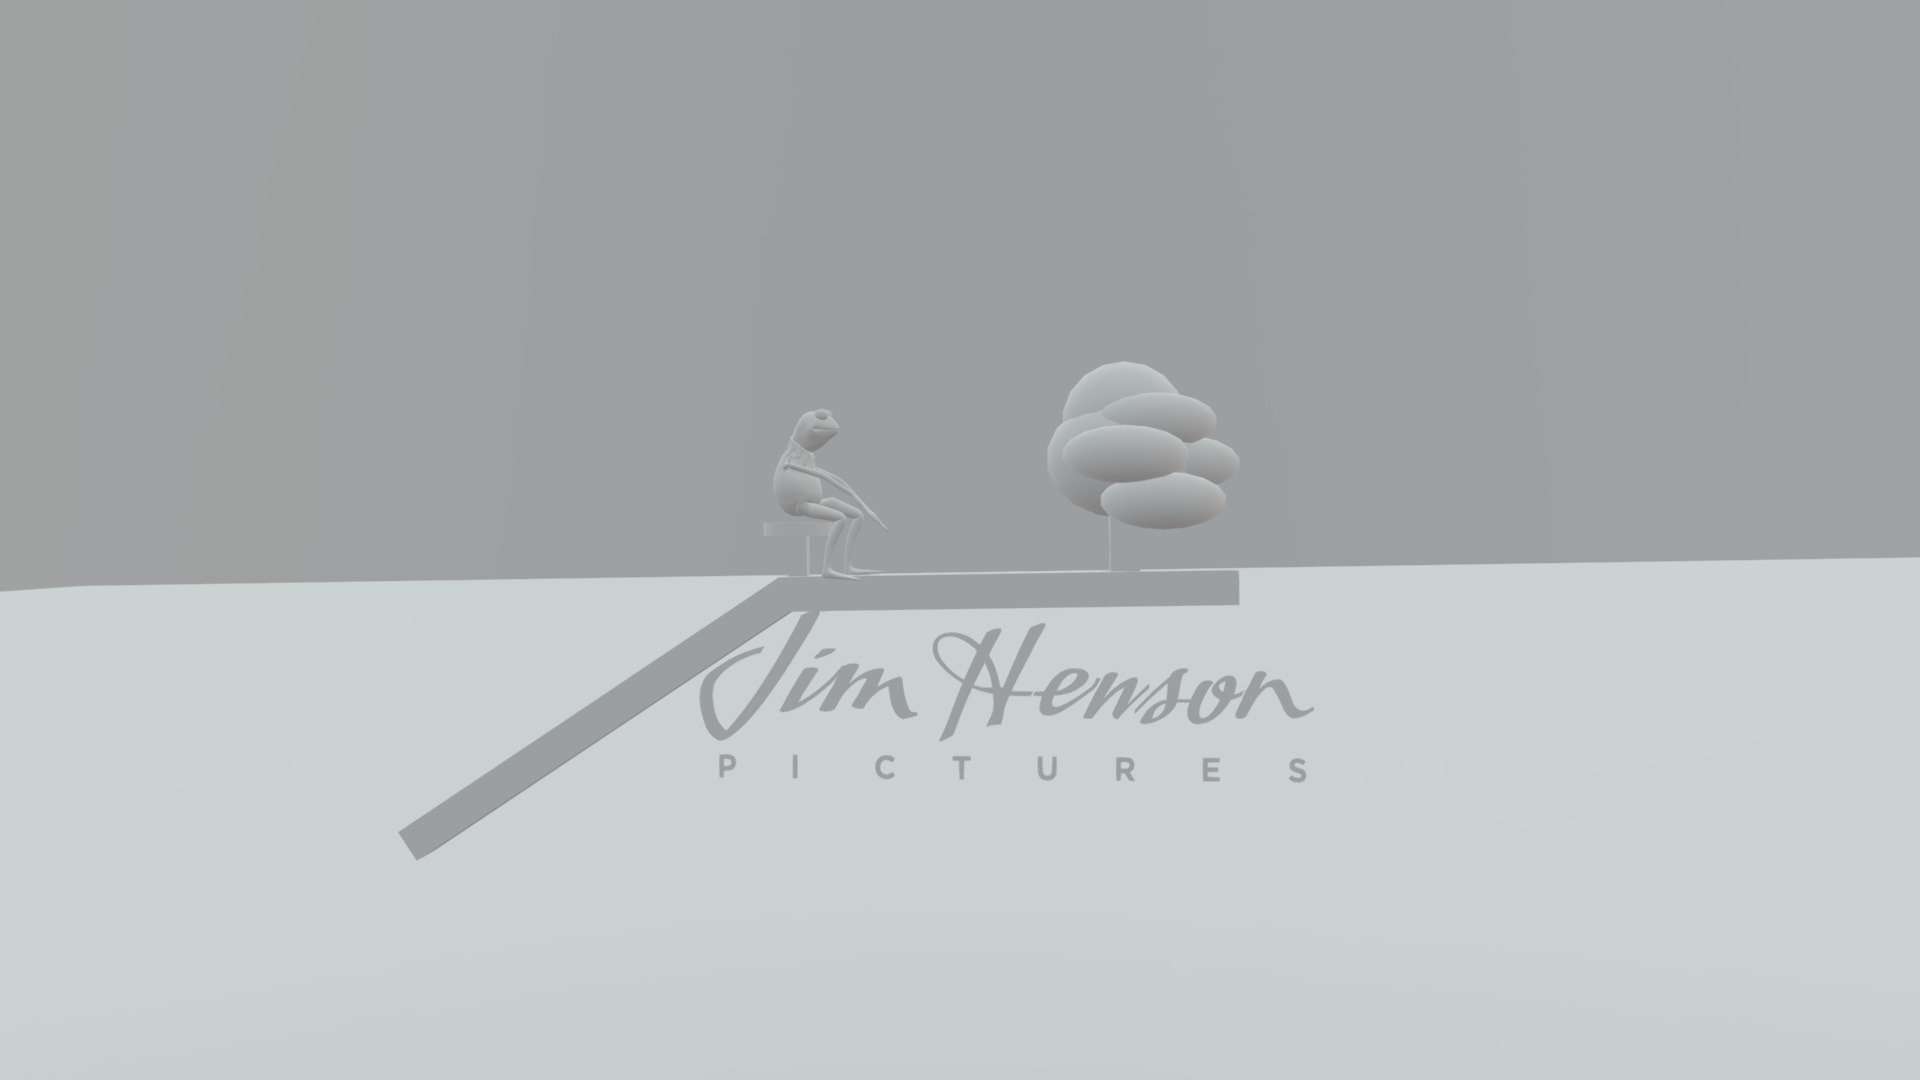 jim henson logo